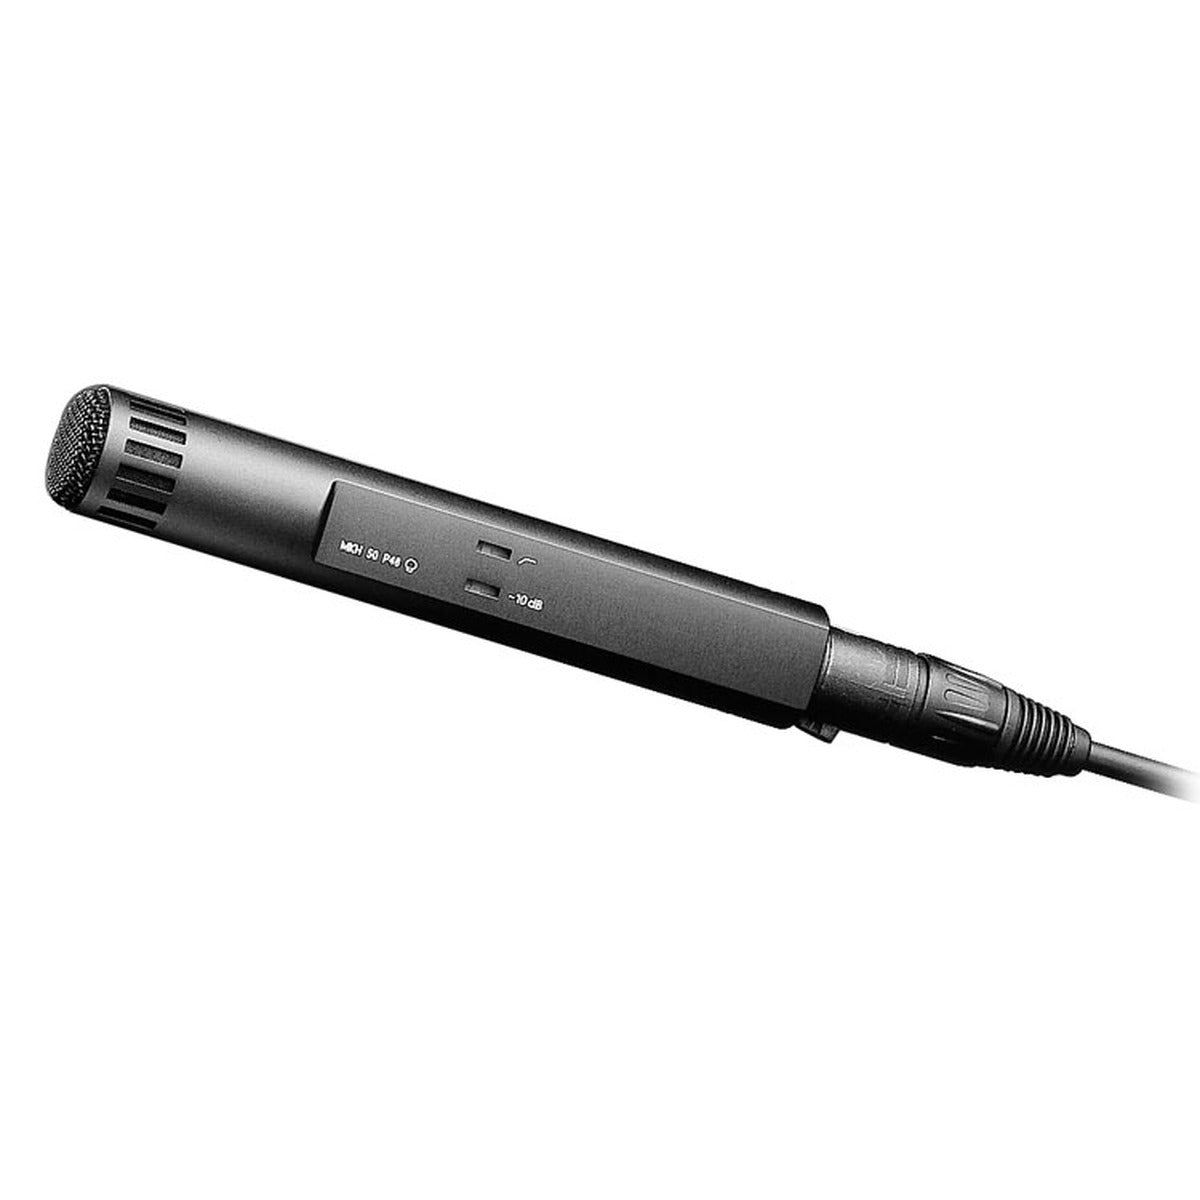 Sennheiser MKH 50 P-48 Super Cardioid Microphone, XLR-3M, Black